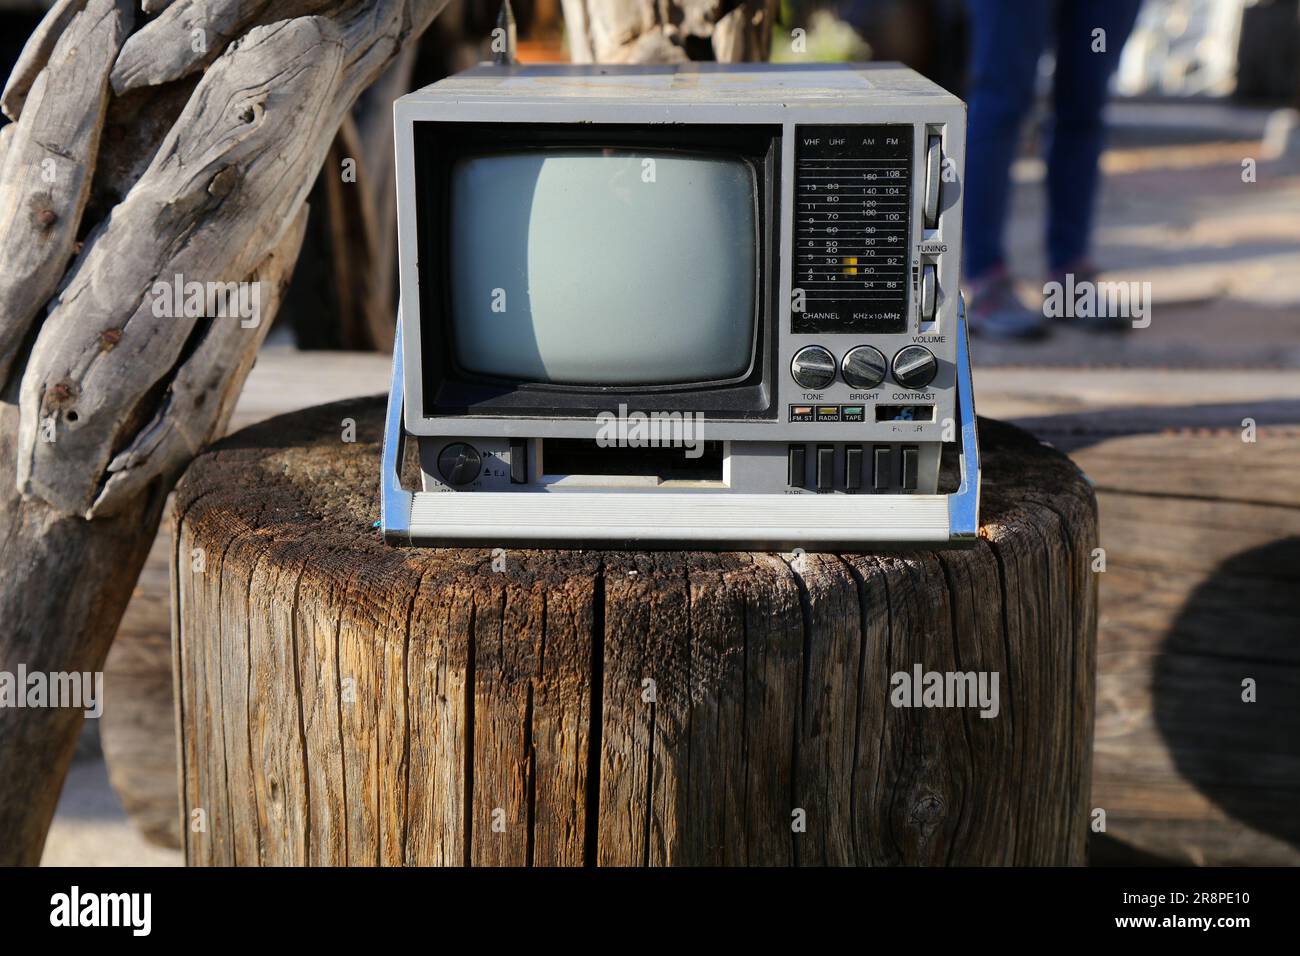 Vintage portable mini TV and radio. 1980s technology nostalgia small TV set. Stock Photo